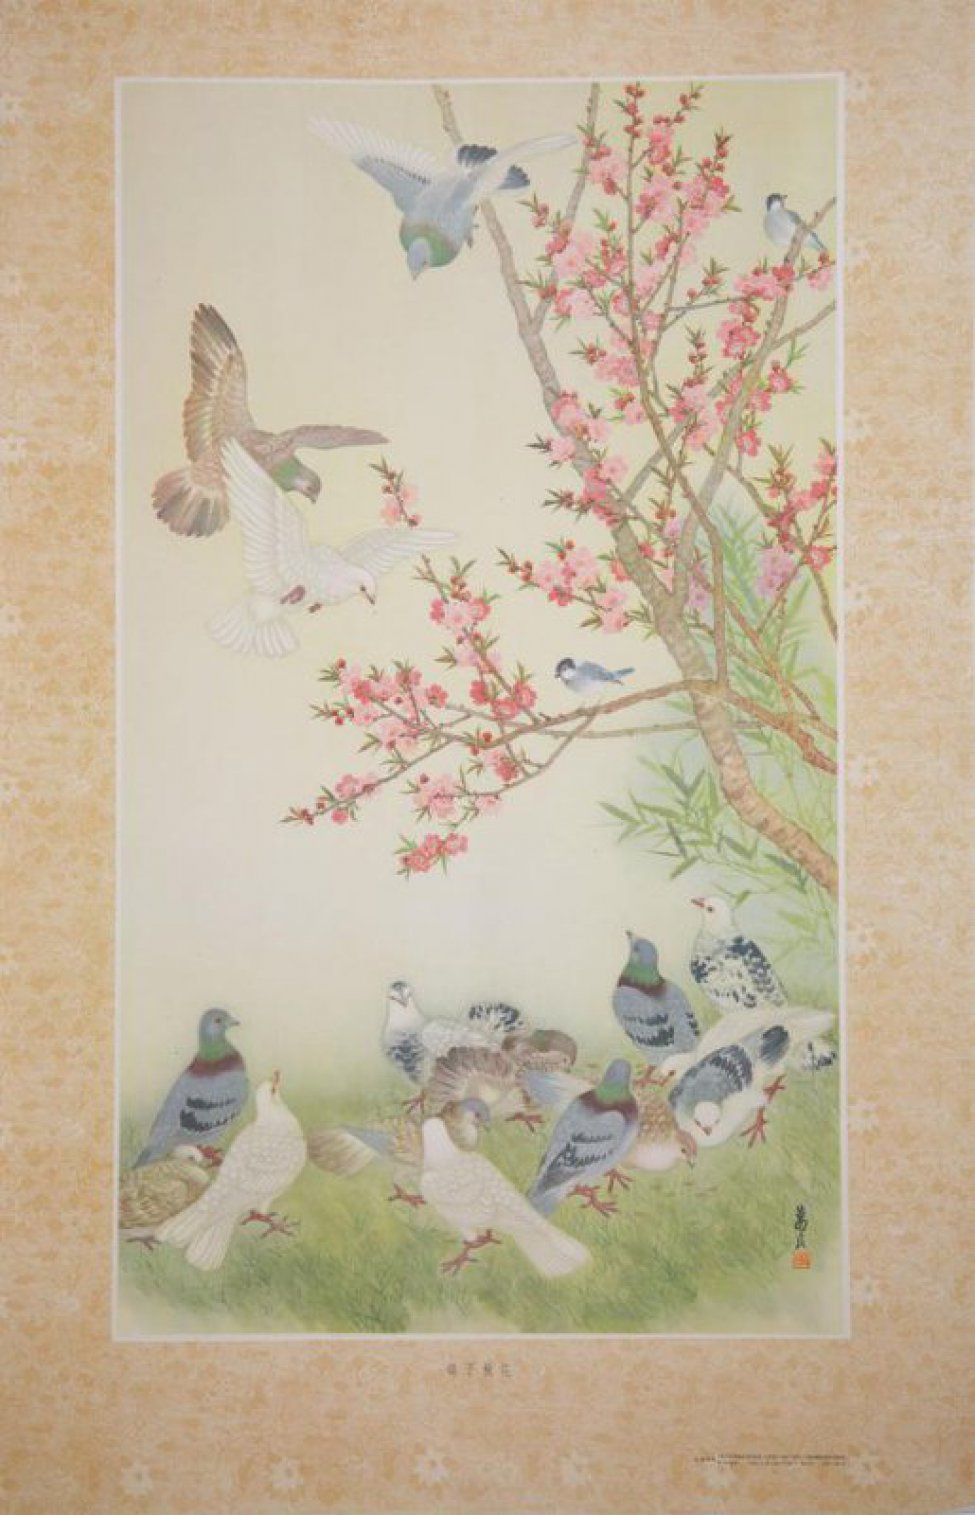 Изображено справа дерево с розовыми цветами. На ветках дерева и под деревом- голуби.